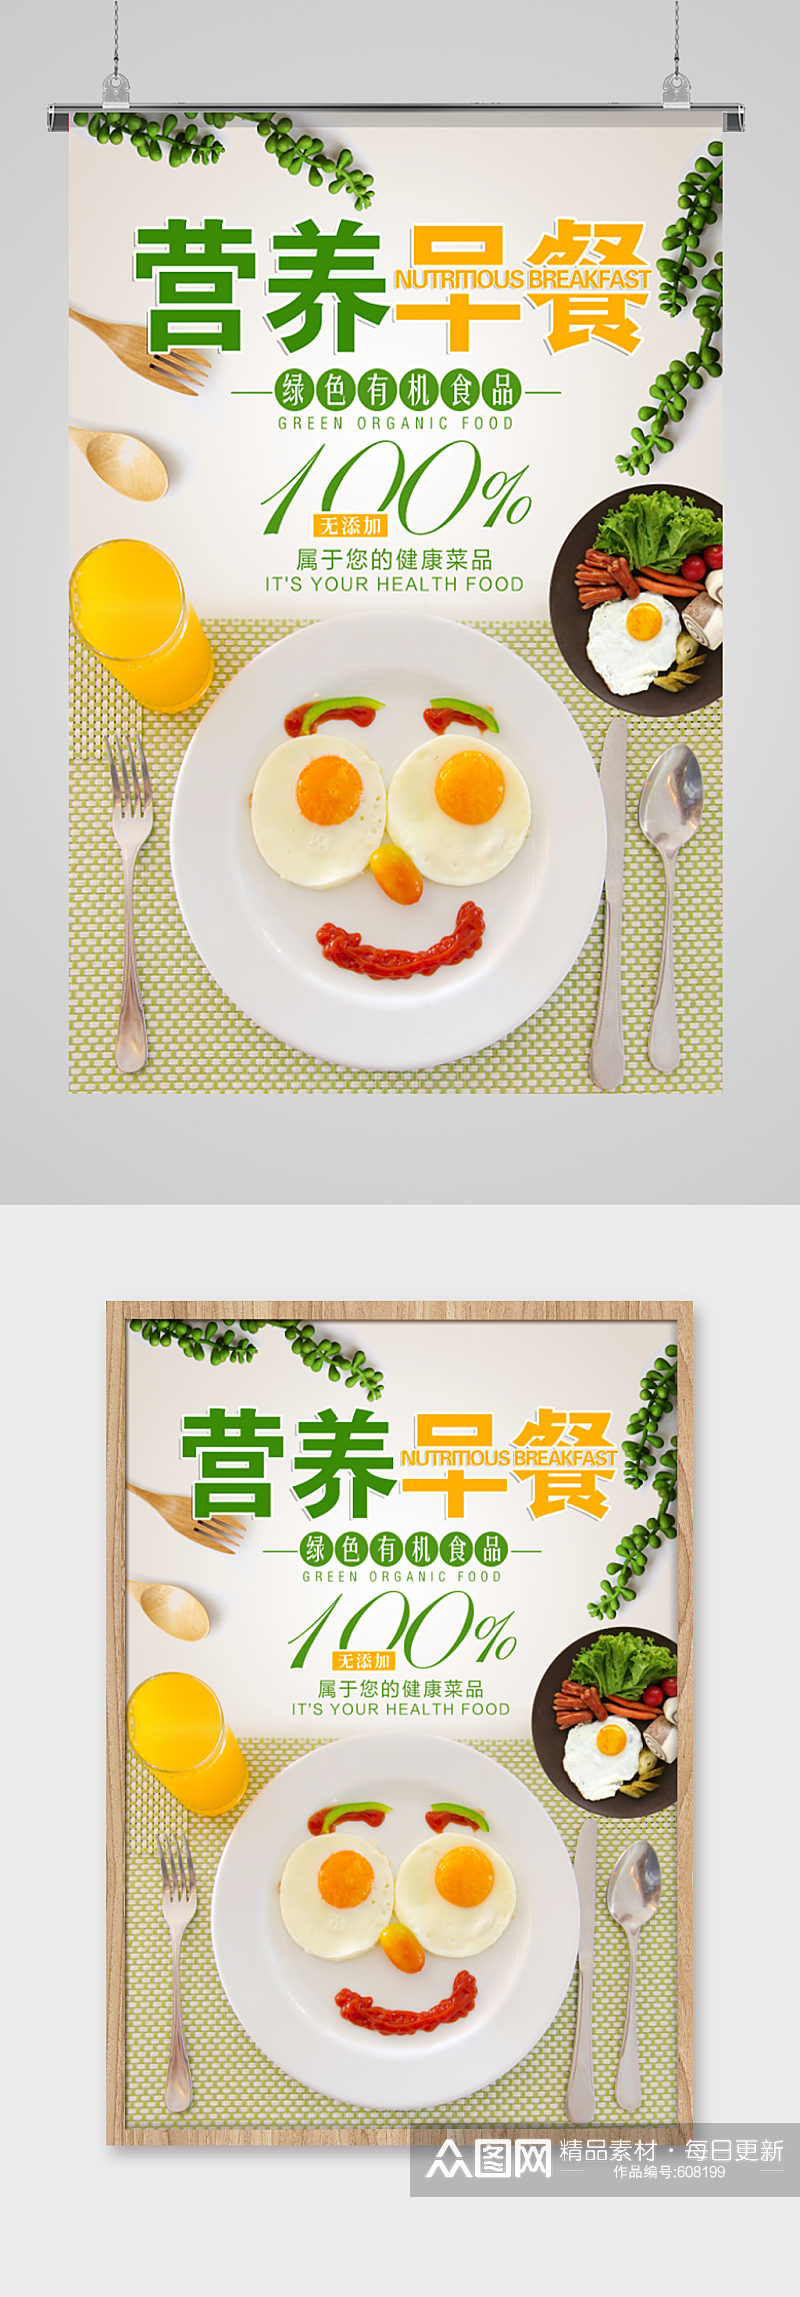 绿色有机食品营养早餐海报食品类海报宣传单页素材